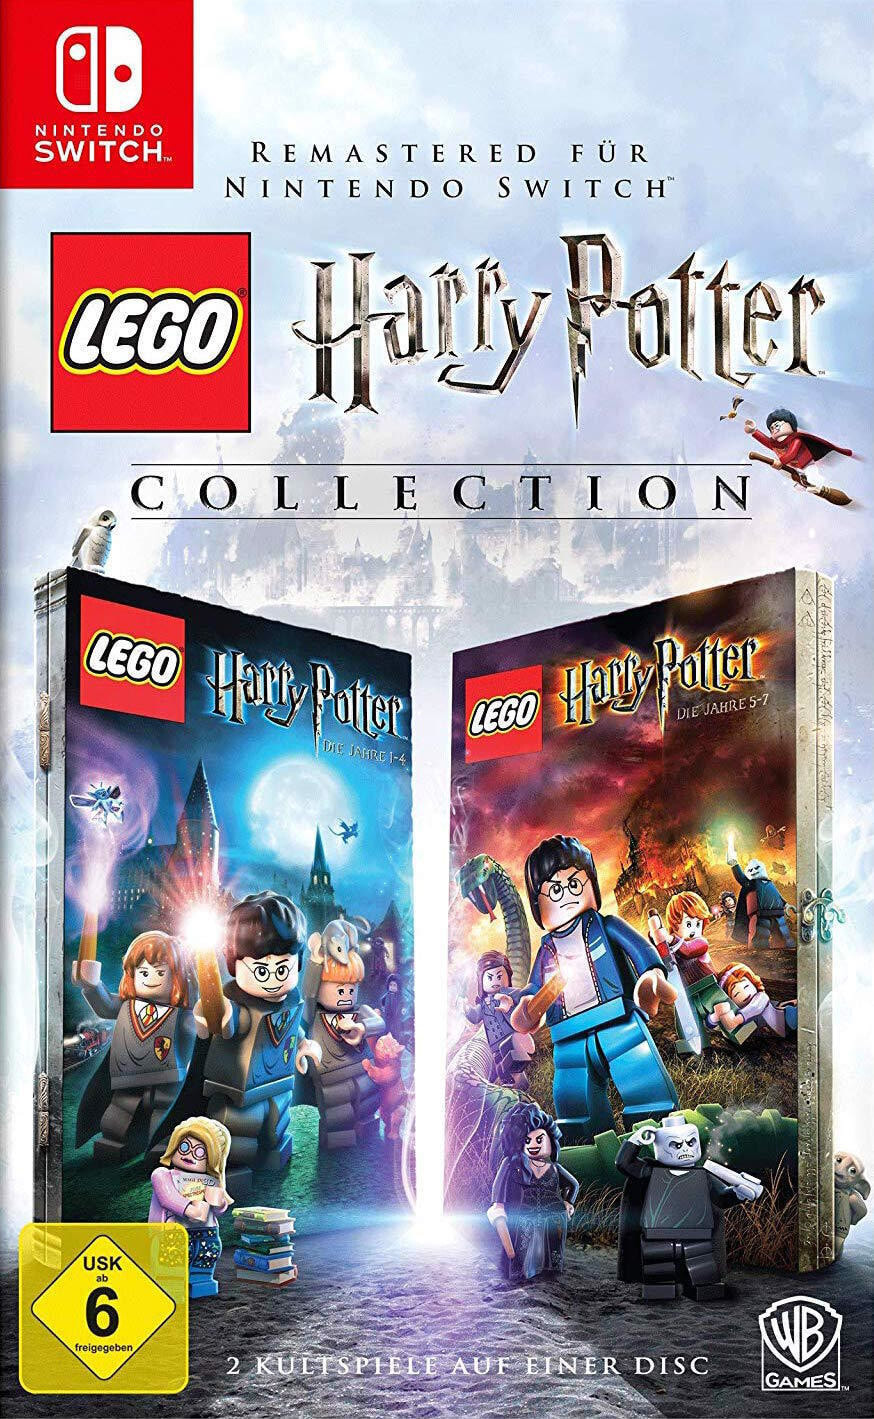 Коллекция LEGO Гарри Поттера Warner Bros, Nintendo Switch, Многопользовательский режим, E10+ (Все 10+)